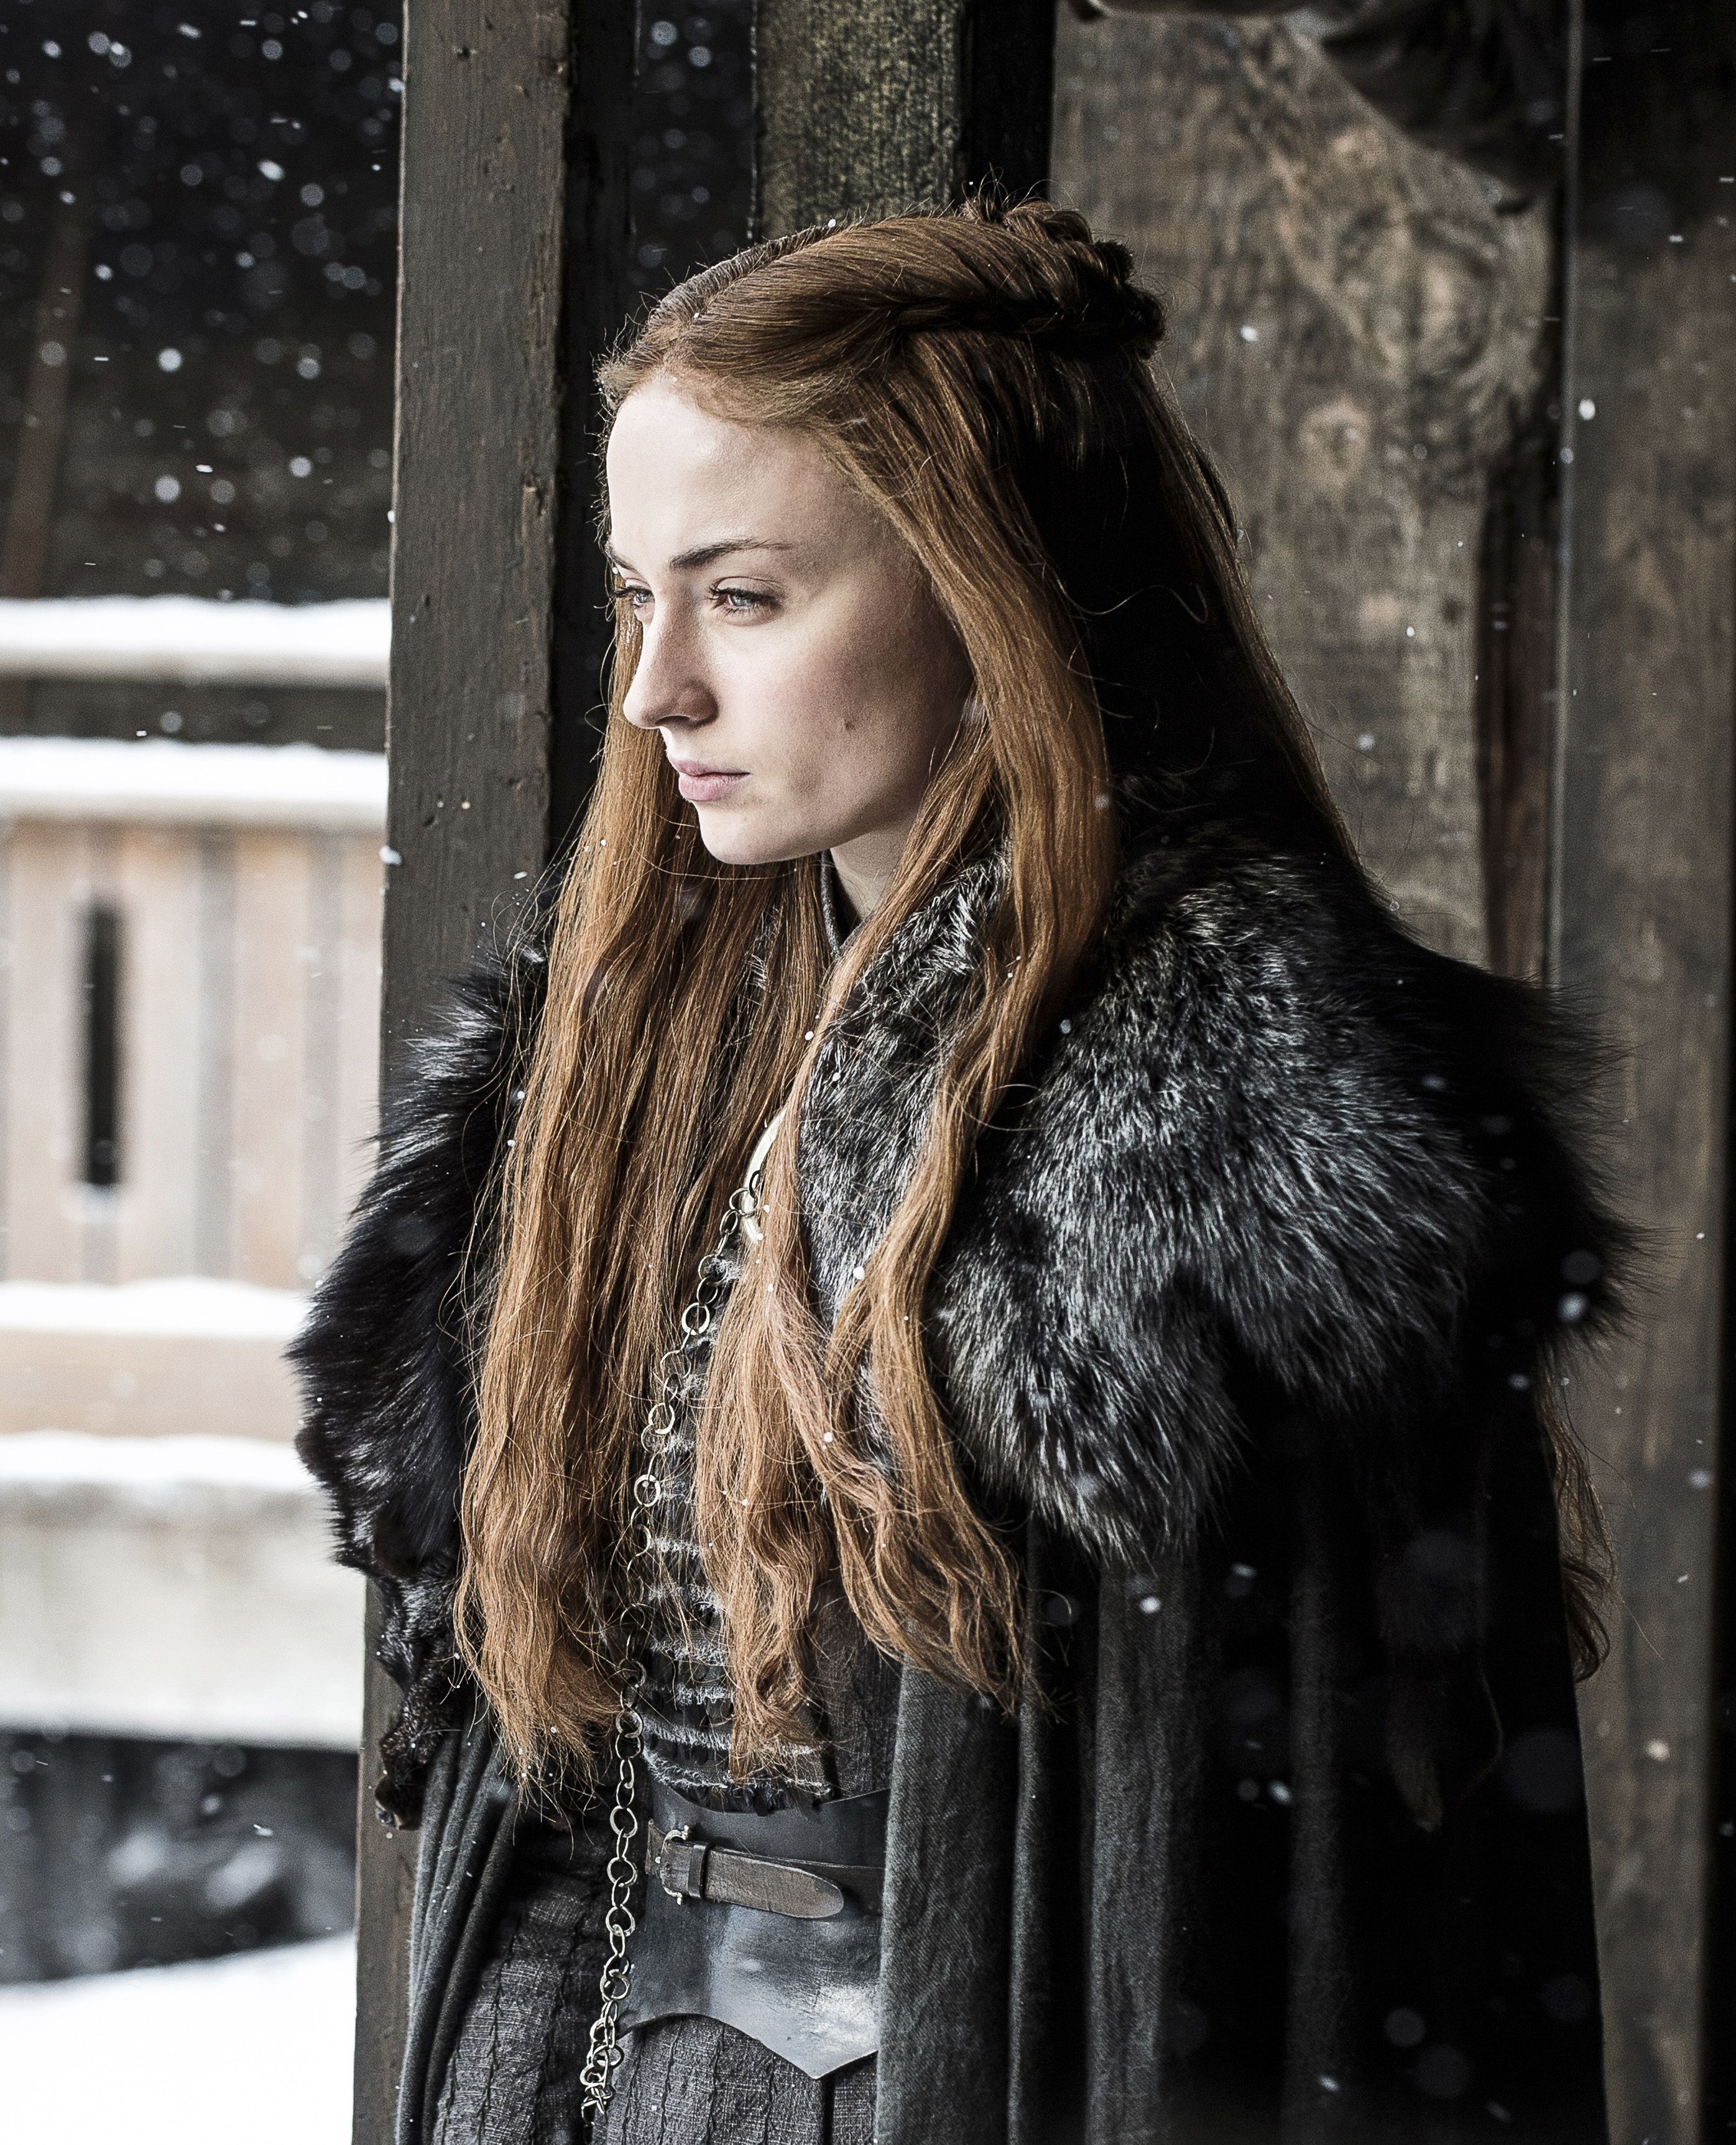 Sansa Starks Hair in Season 7 Episode 3 of Game of Thrones Looks Like  Catelyn Stark